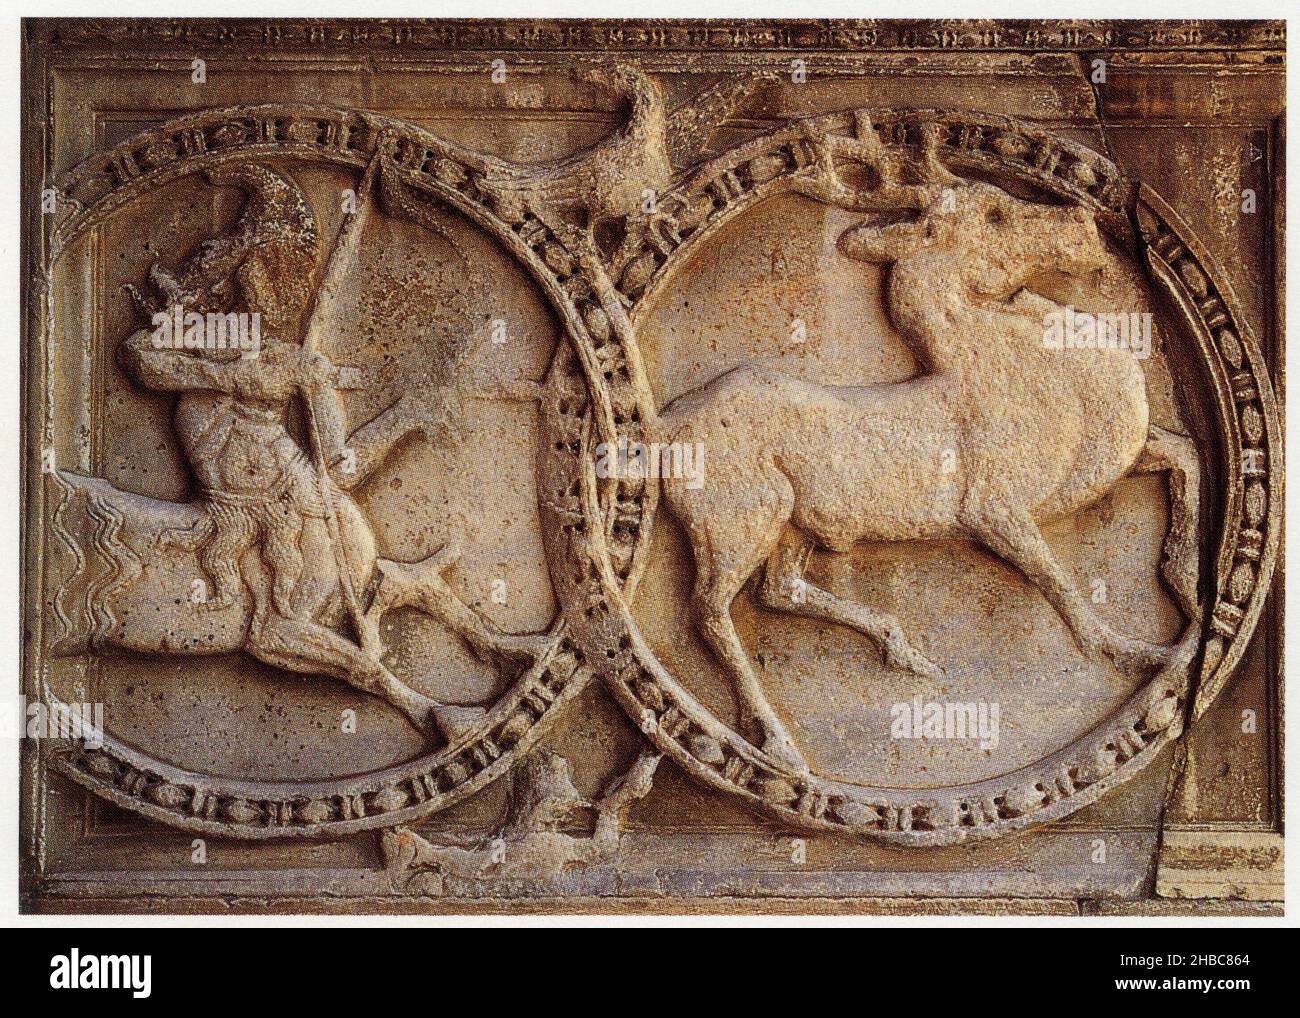 Abbatiale Saint-Gilles-du-Gard.Bas-relief de la façade représentant un cerf se cabrant devant un centaure Stock Photo